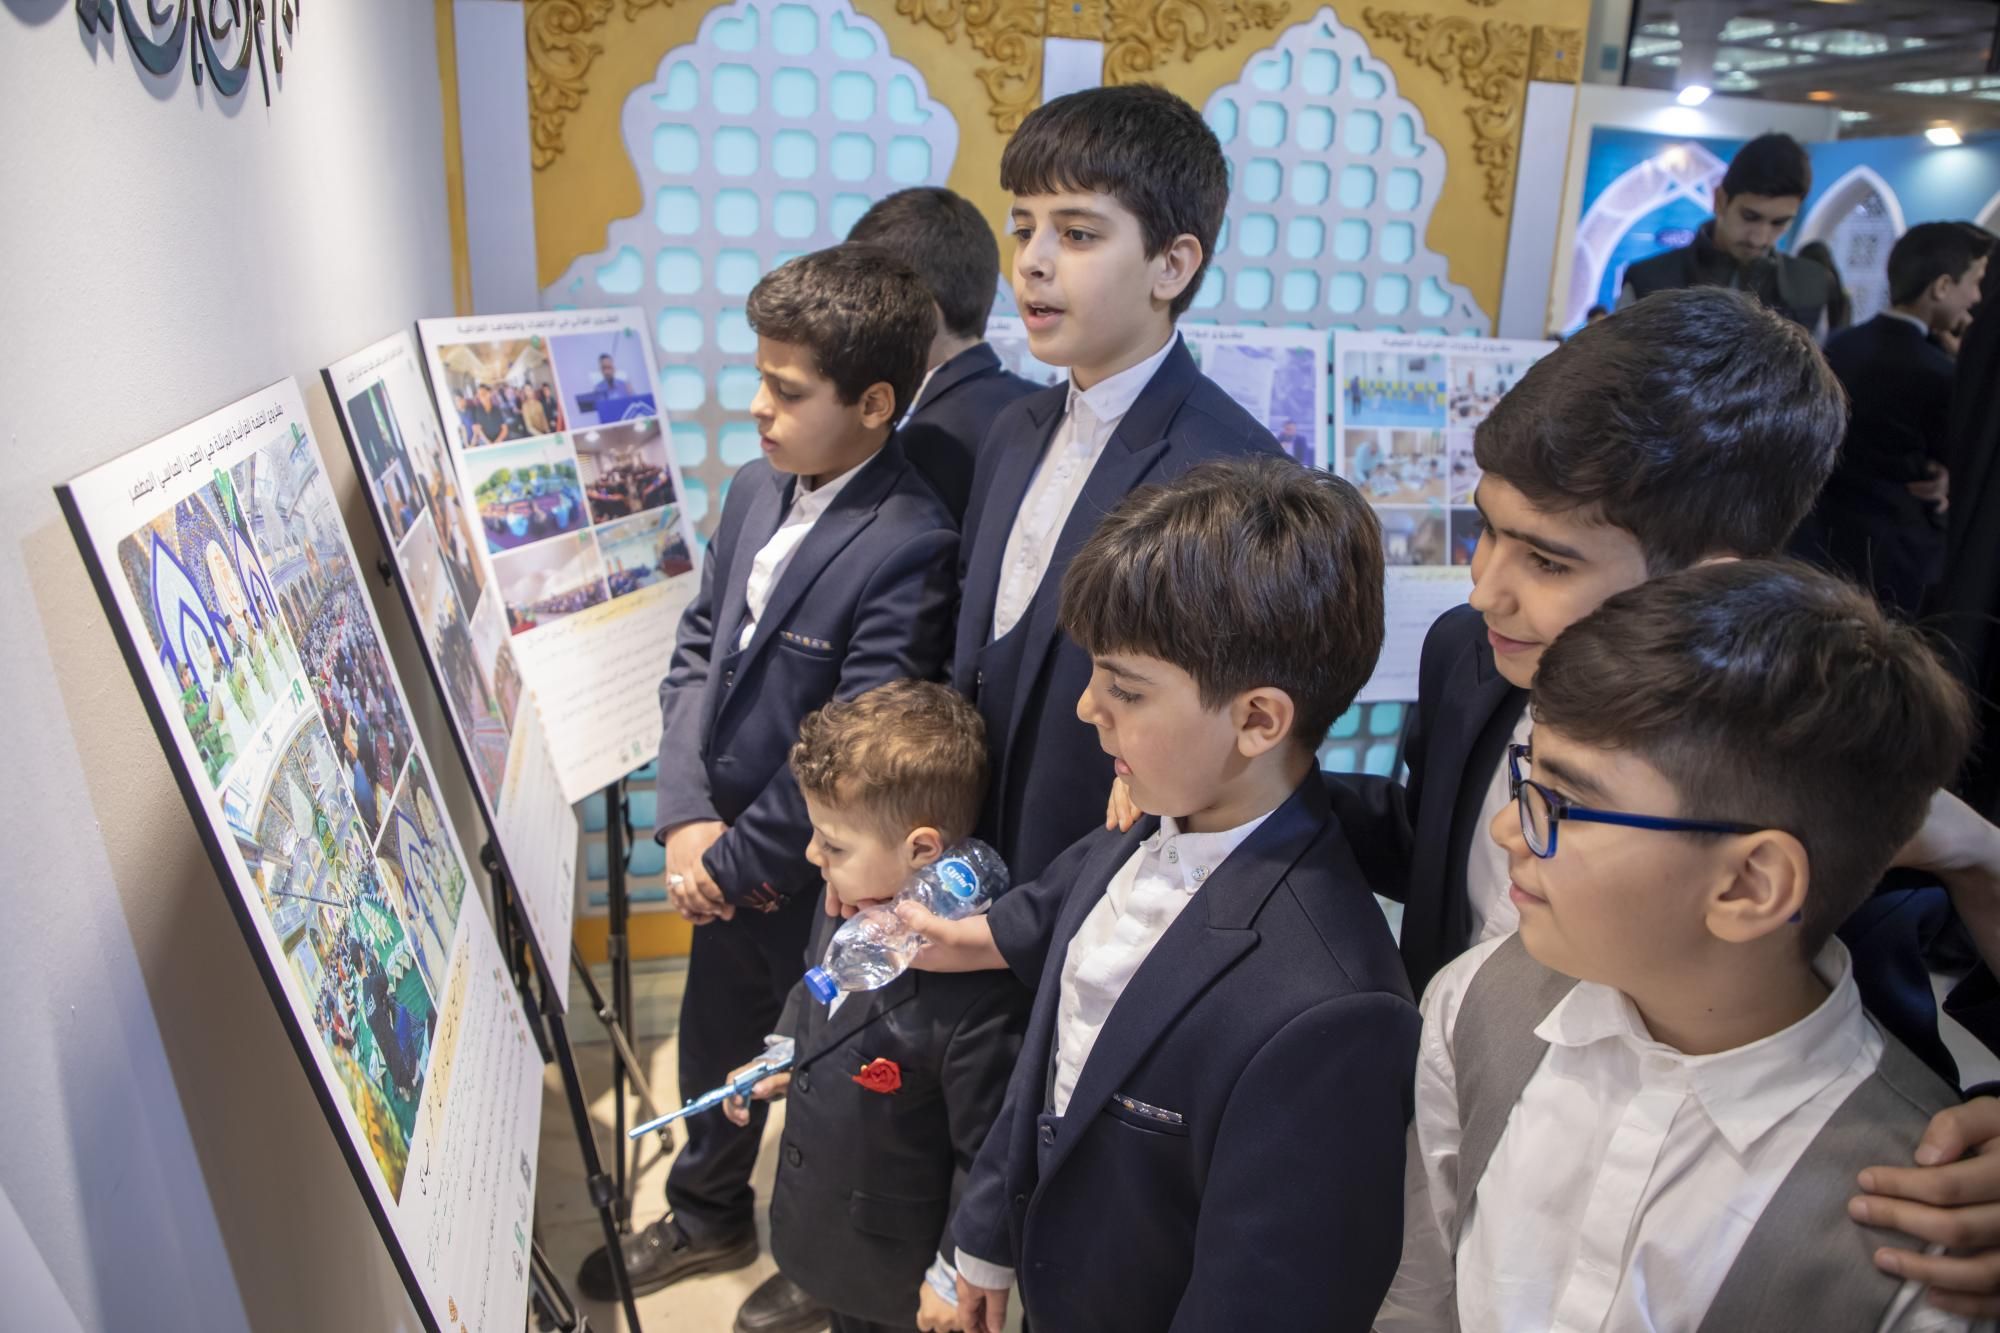 المؤسّسات القرآنية تستعرض فعاليّاتها في جناح العتبة العبّاسيّة في معرض طهران الدولي